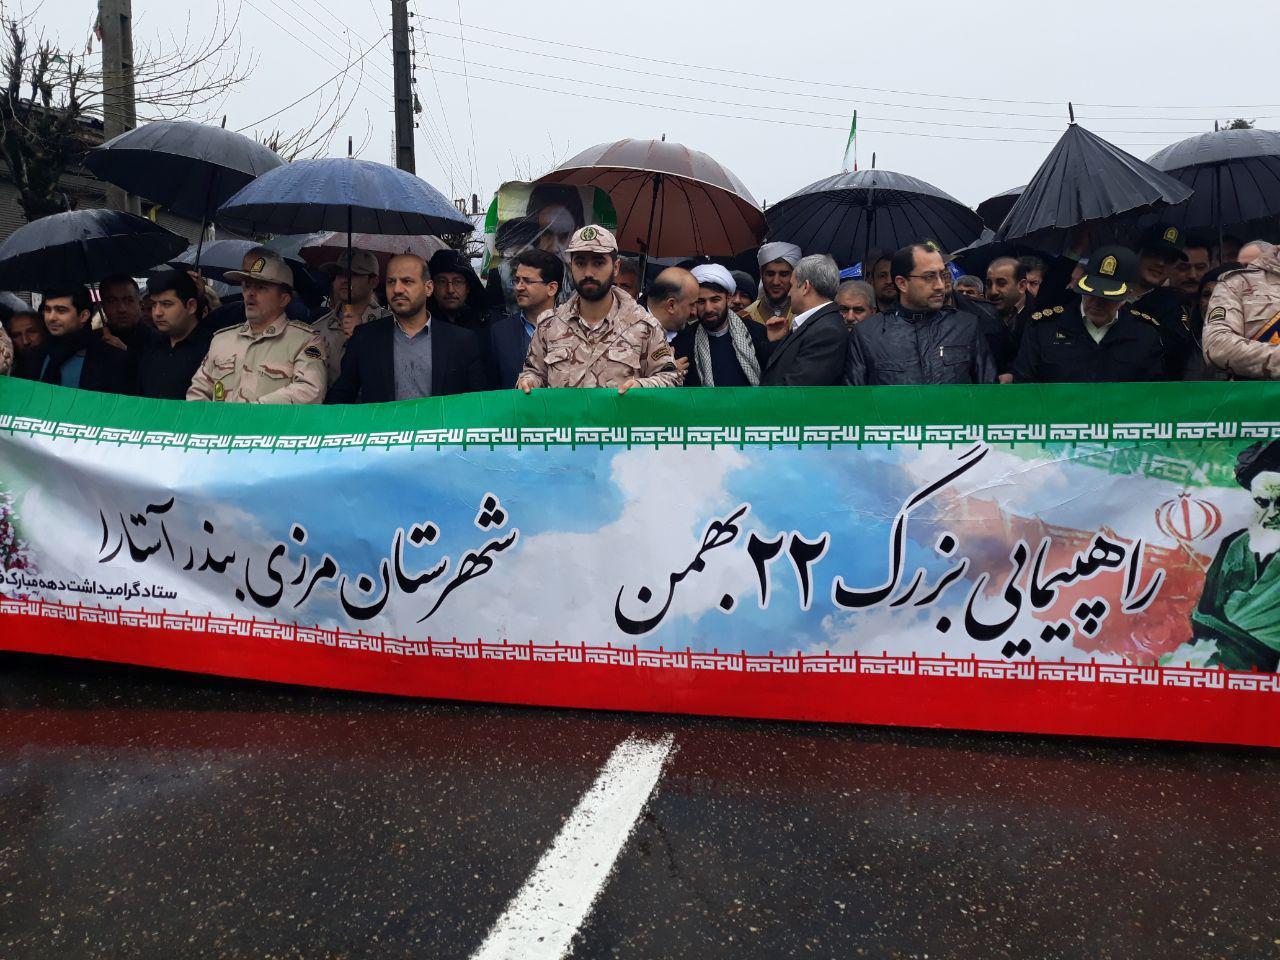 تجلی حضور؛ تصاویر ثبت شده از راهپیمایی پرشکوه 22 بهمن توسط کارکنان شرکت گاز استان گیلان